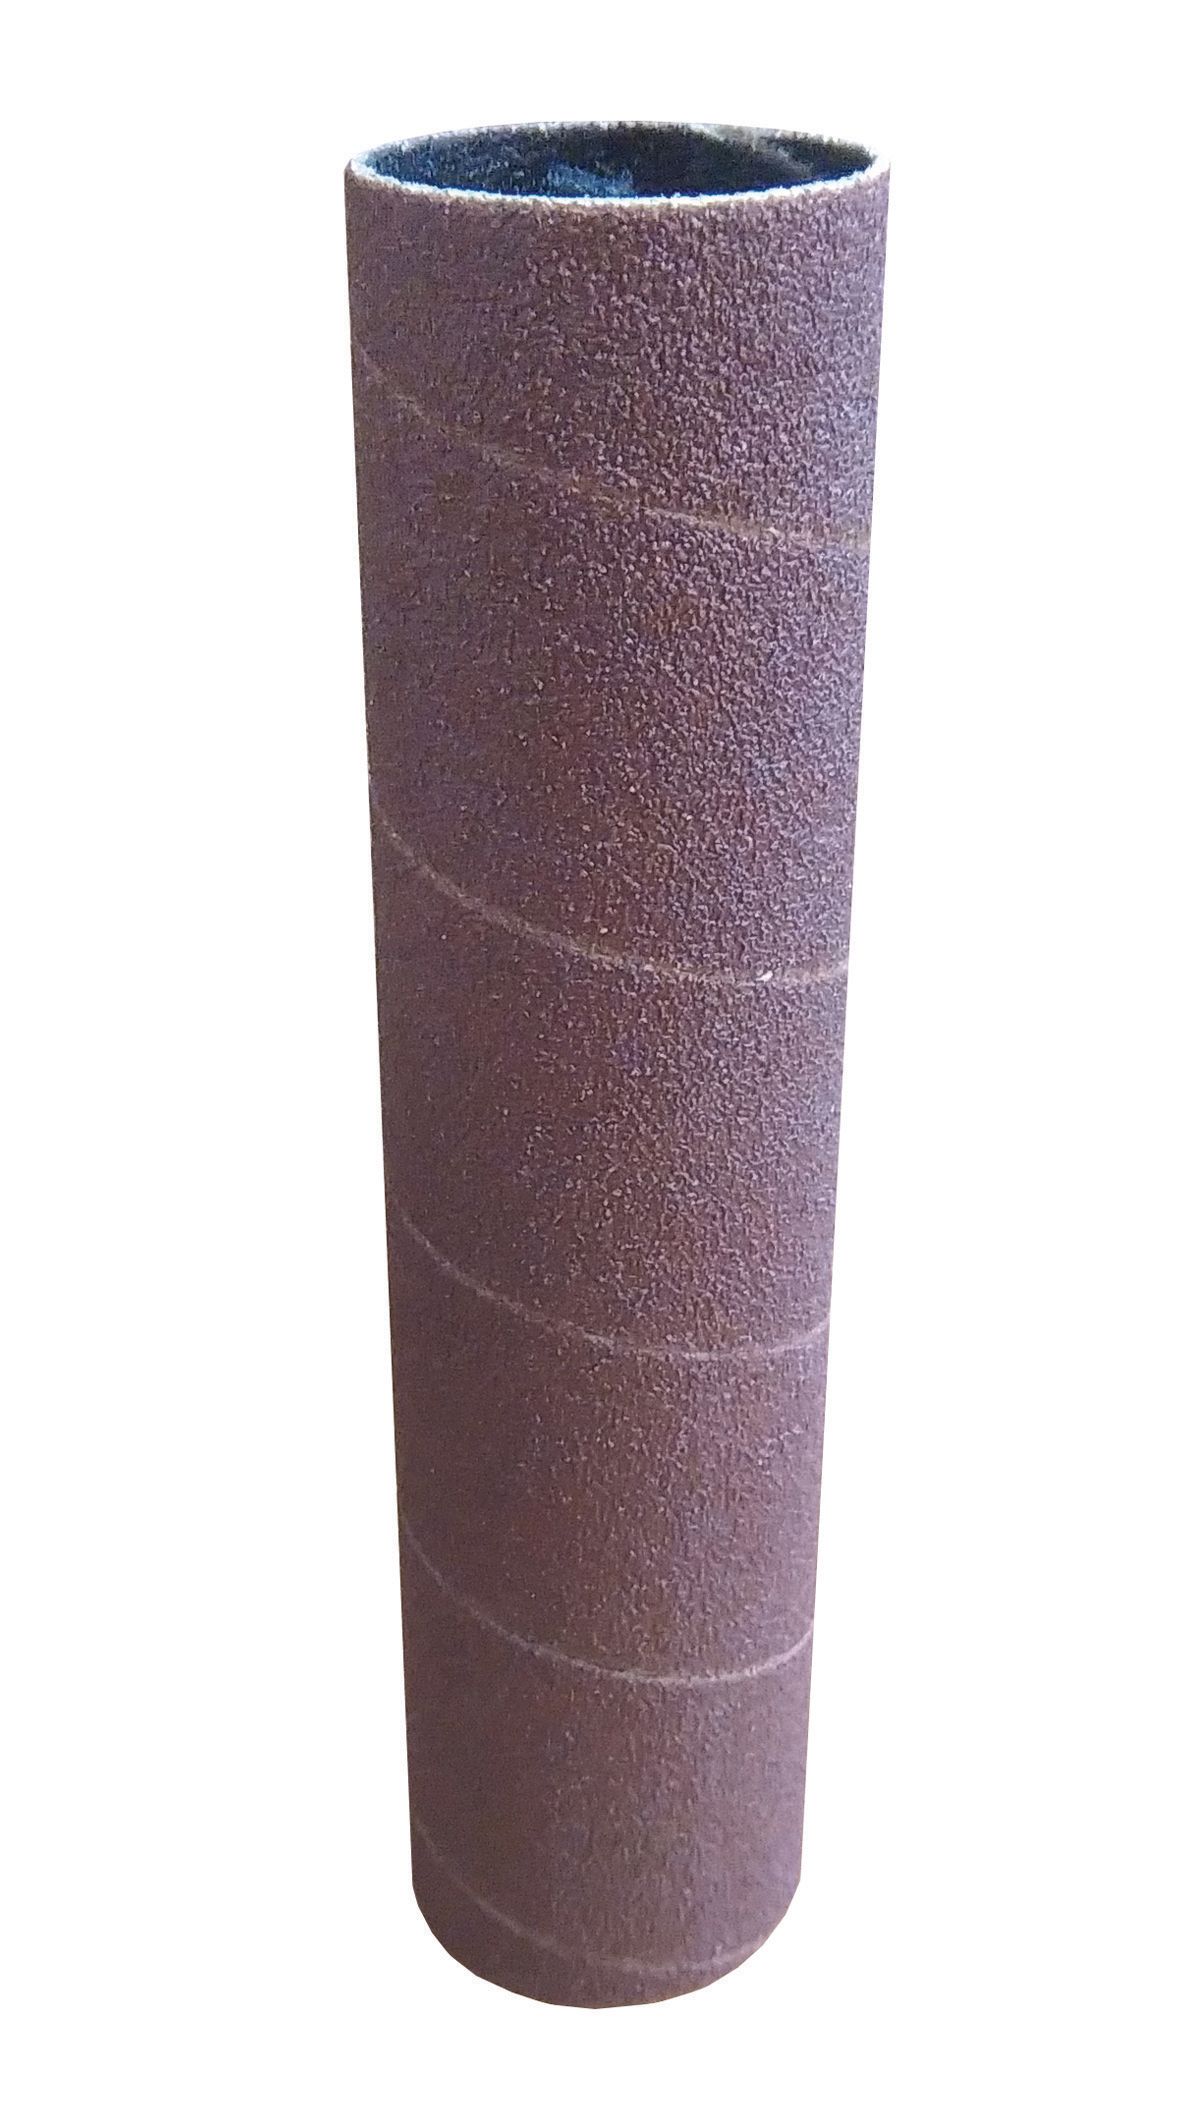 Dremel Aluminium oxide Sanding sleeve set 60 grit, Pack of 6